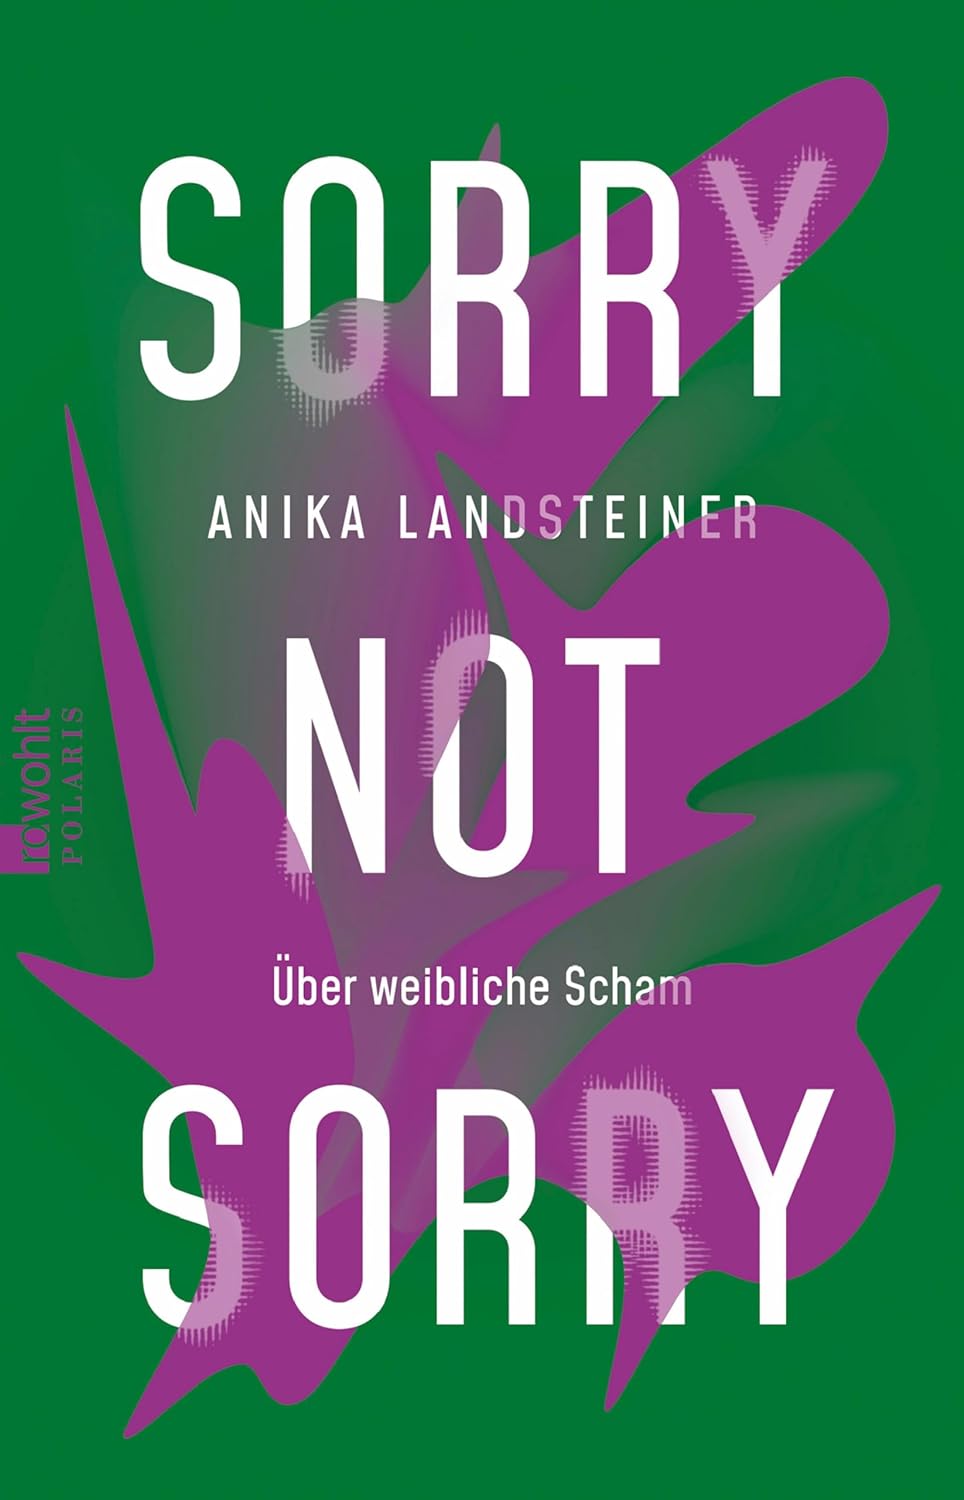 Anika Landsteiner - Sorry not sorry - Über weibliche Scham